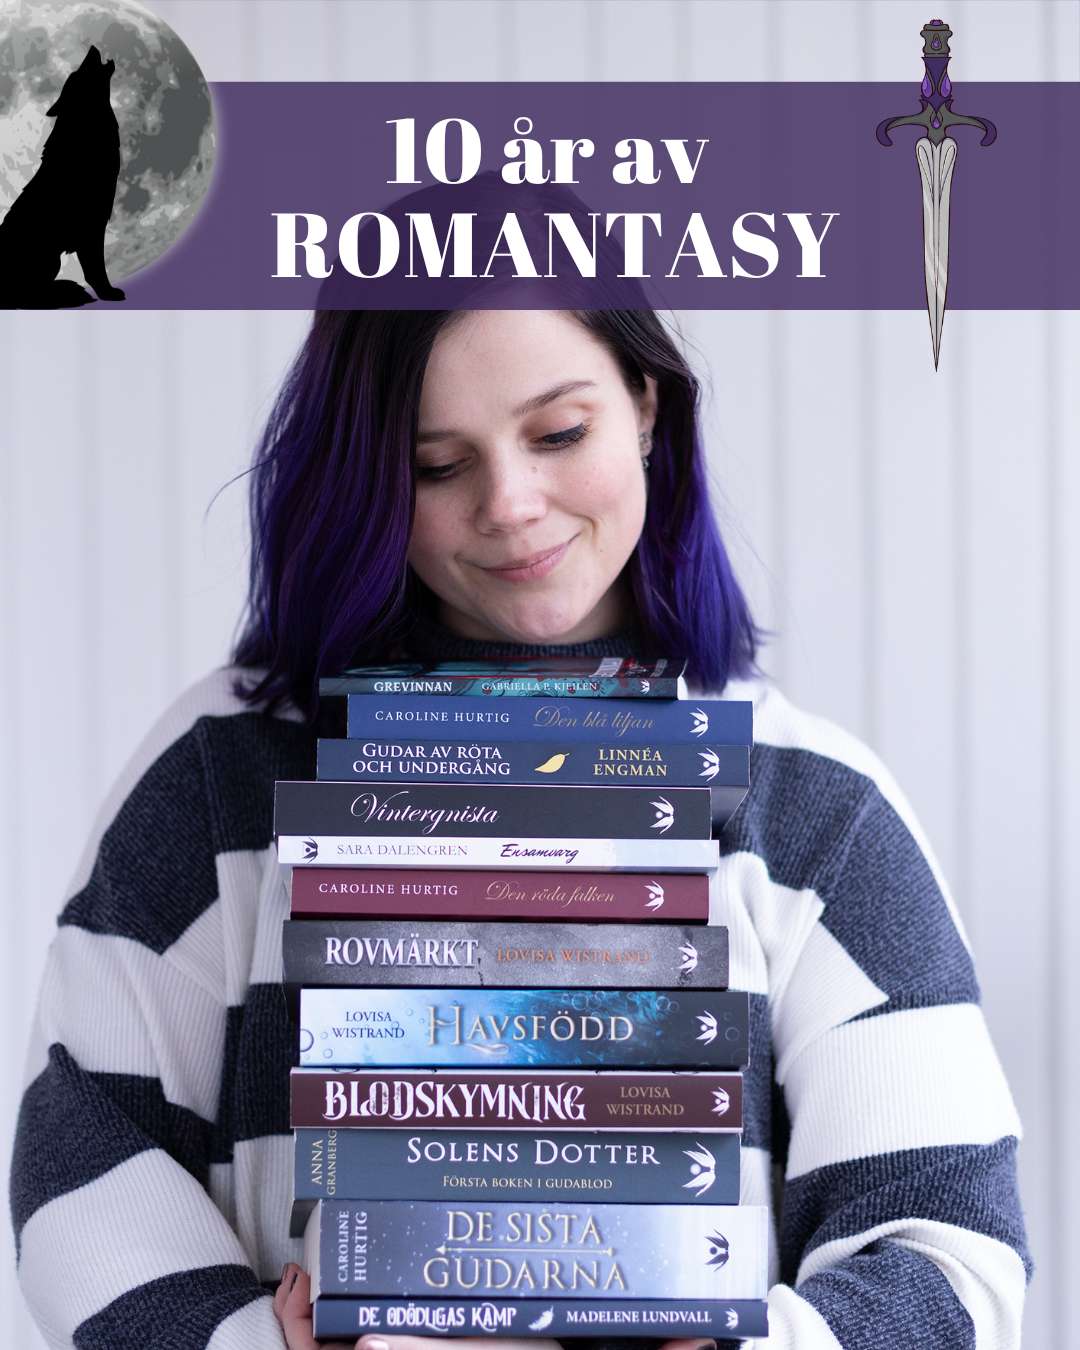 Kvinna med lila hår håller en hög med böcker, alla utgivna på Seraf förlag och i genren romantasy.